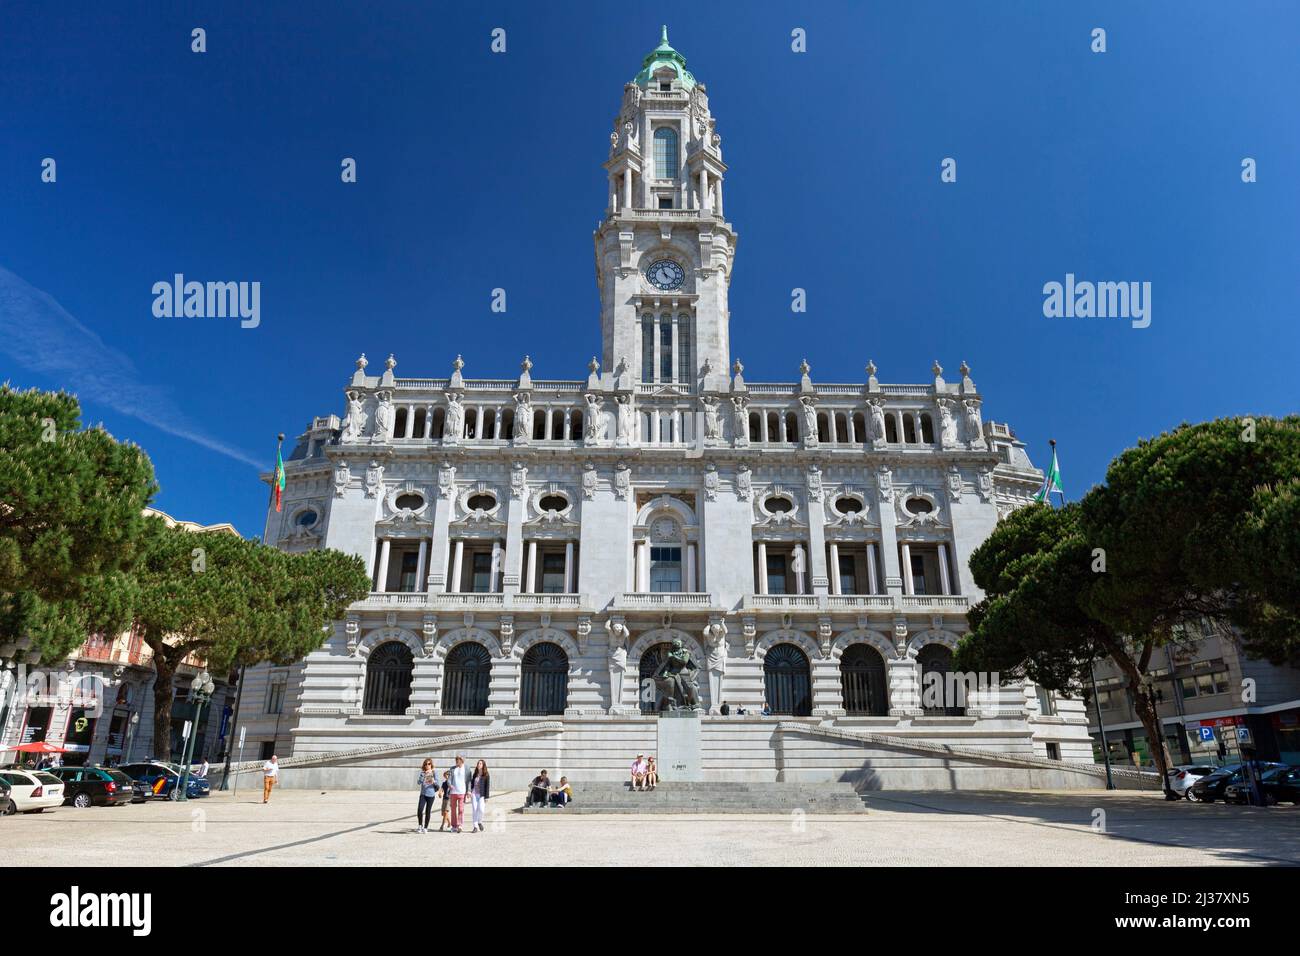 Europe, Portugal, Porto, Building of the Câmara Municipal (City Hall) of Porto. Stock Photo